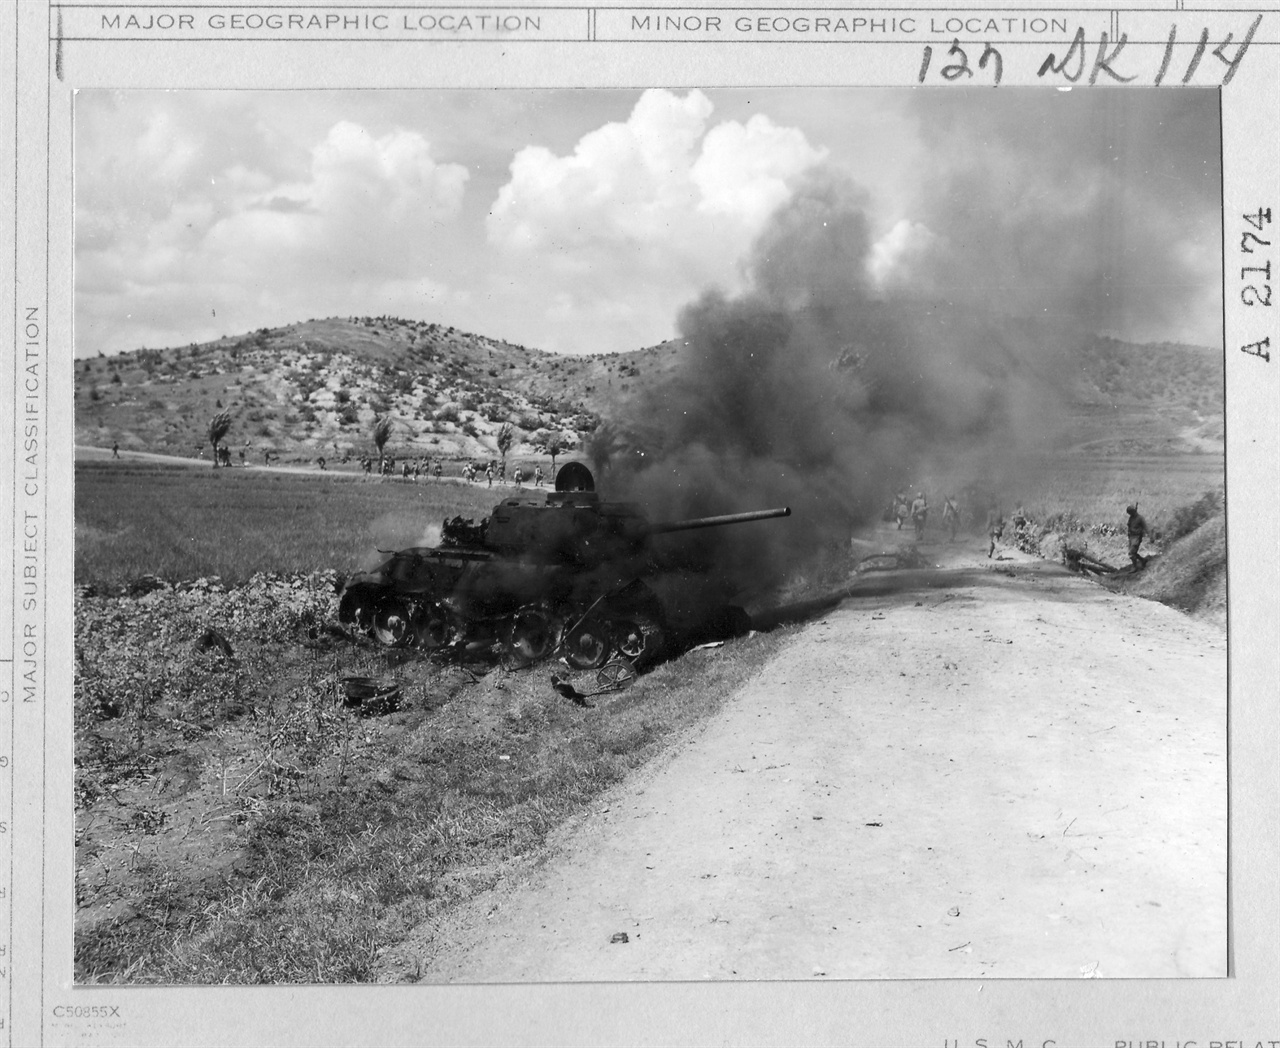   1950. 9. 4. 미 전투기의 공습에 불타고 있는 인민군 탱크.